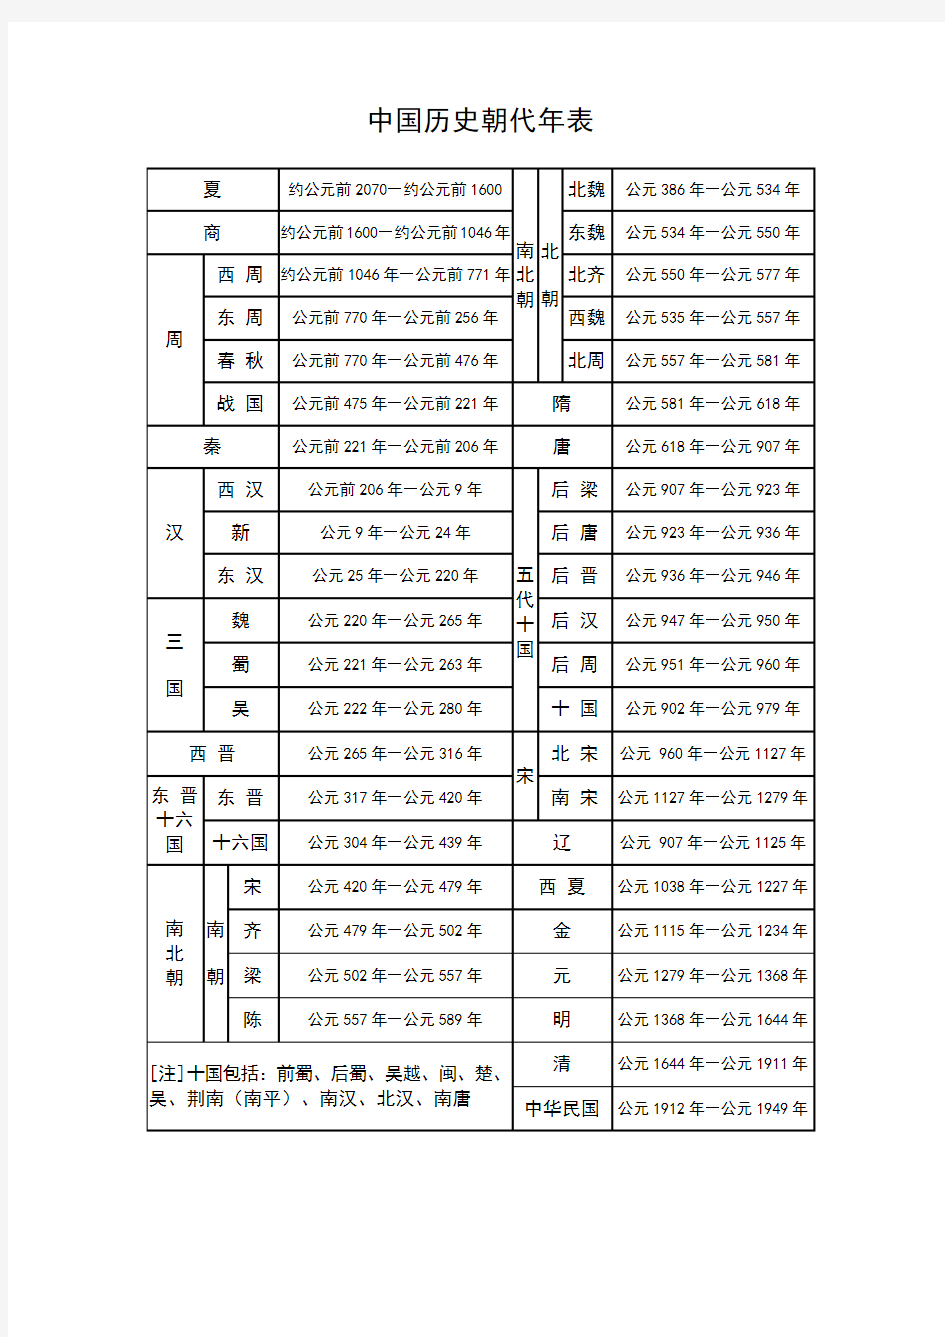 中国历史朝代年表(完整版)